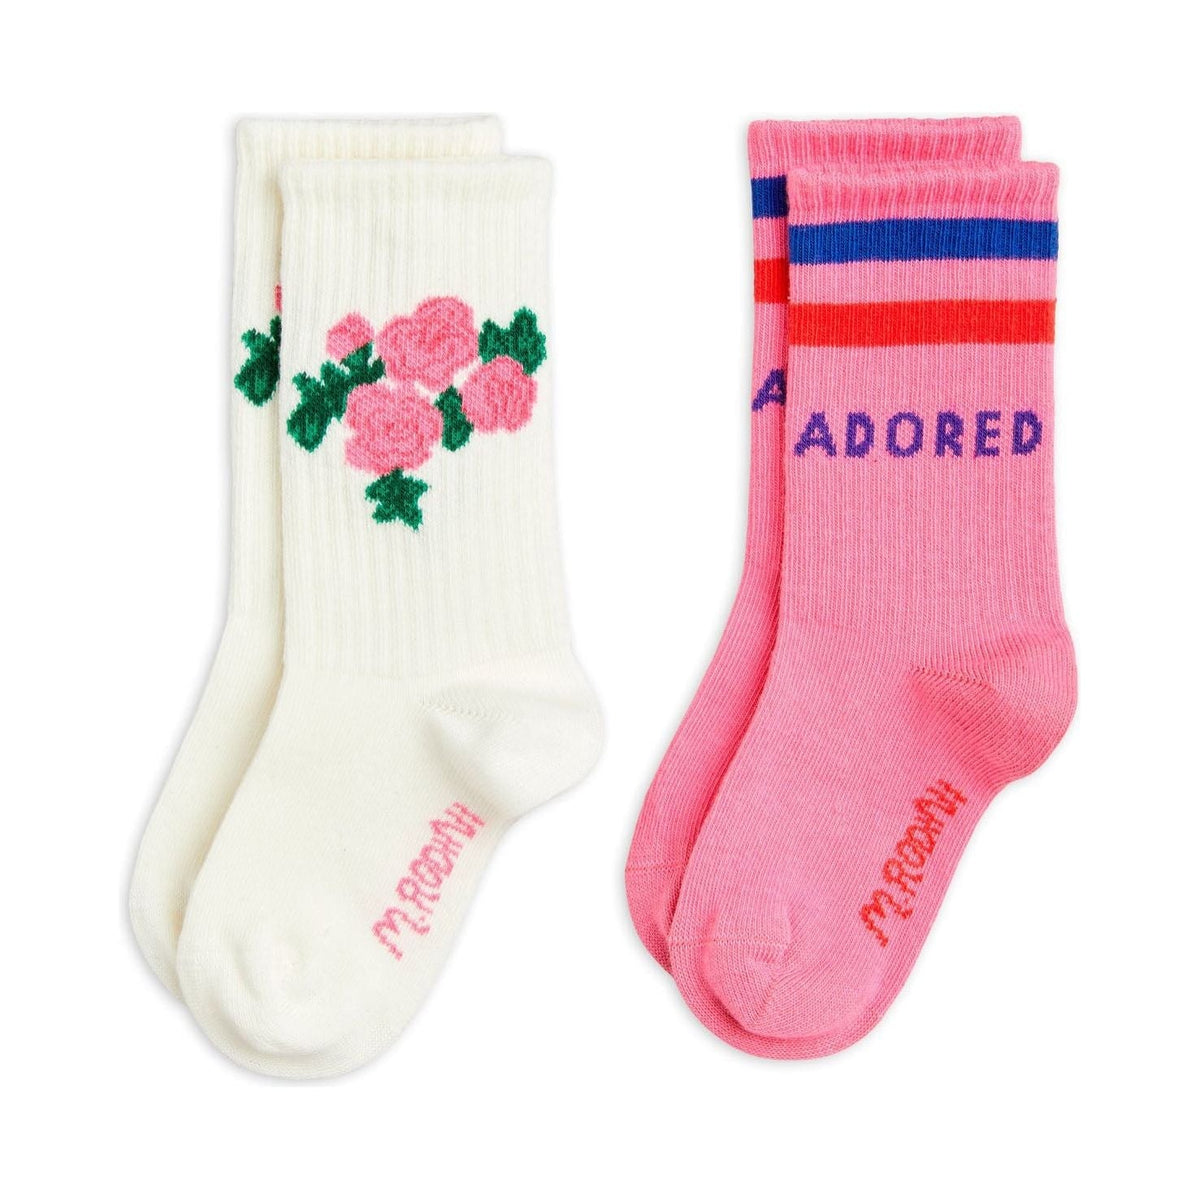 Roses 2-Pack Socks